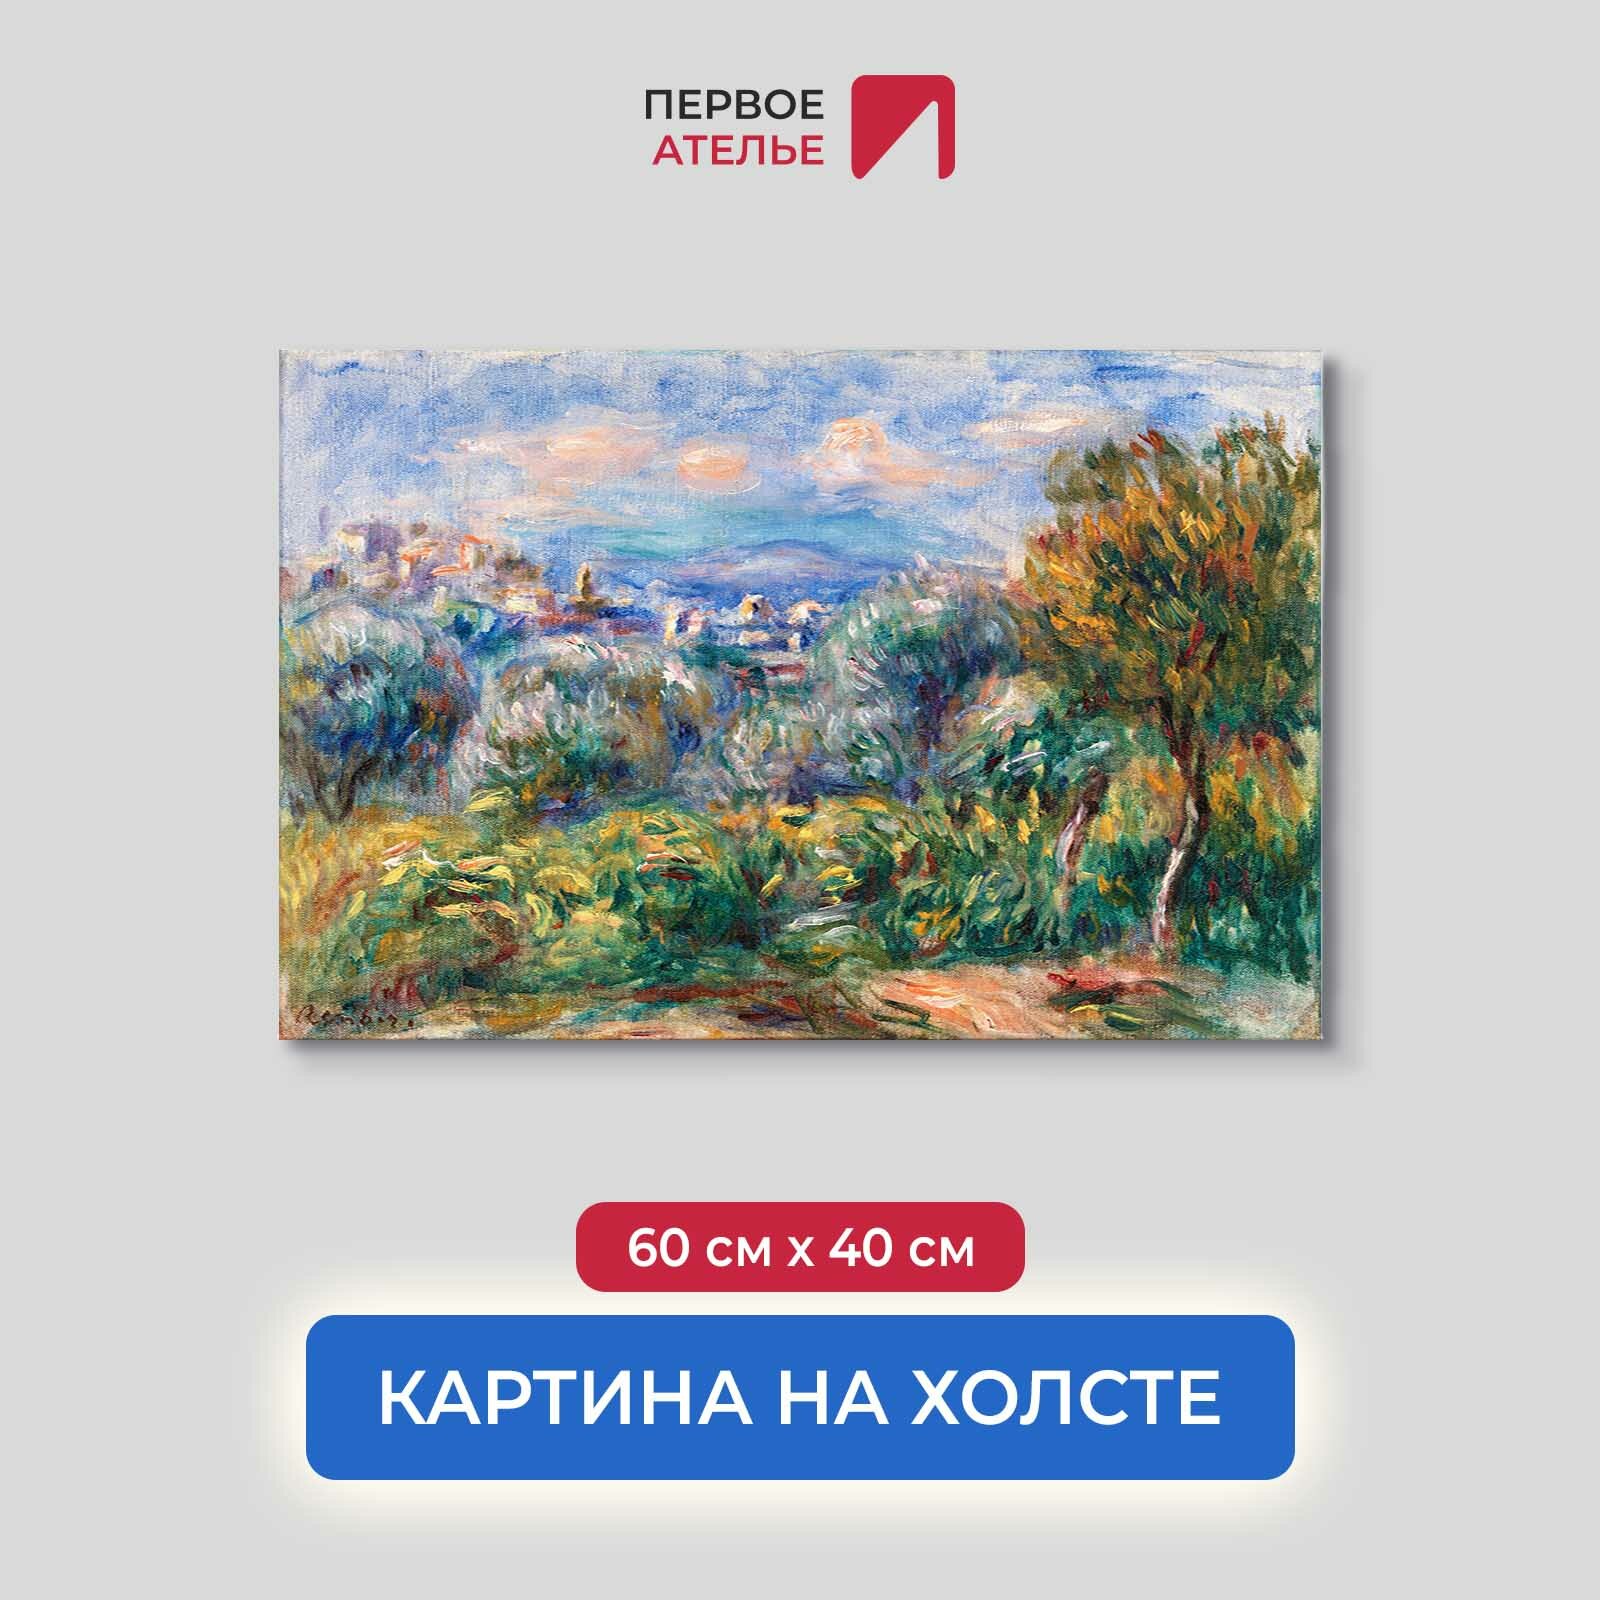 Постер для интерьера на стену первое ателье - репродукция картины Огюста Ренуара "Пейзаж" 60х40 см (ШхВ), на холсте